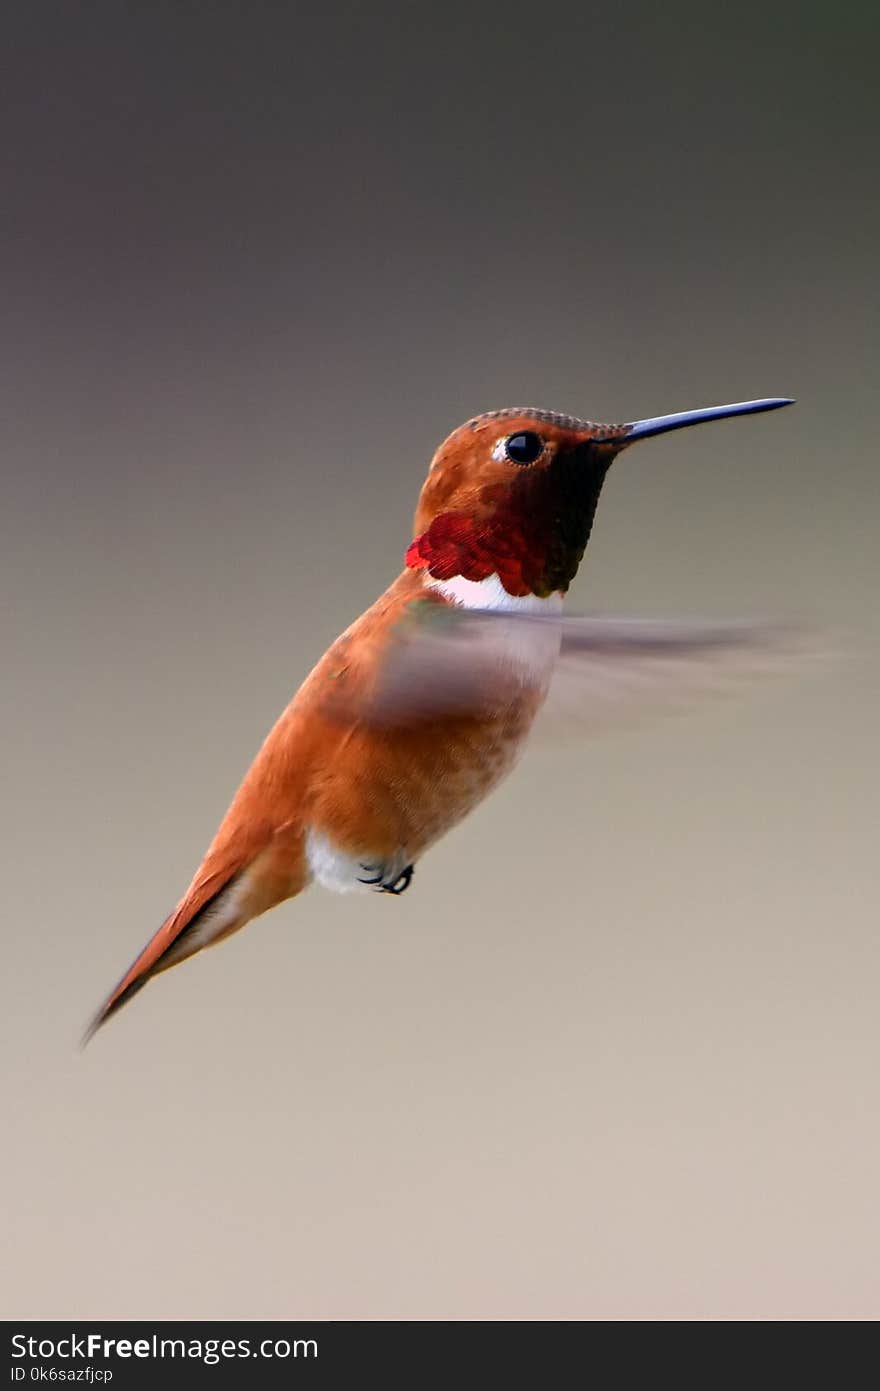 Closeup Photography of Humming Bird